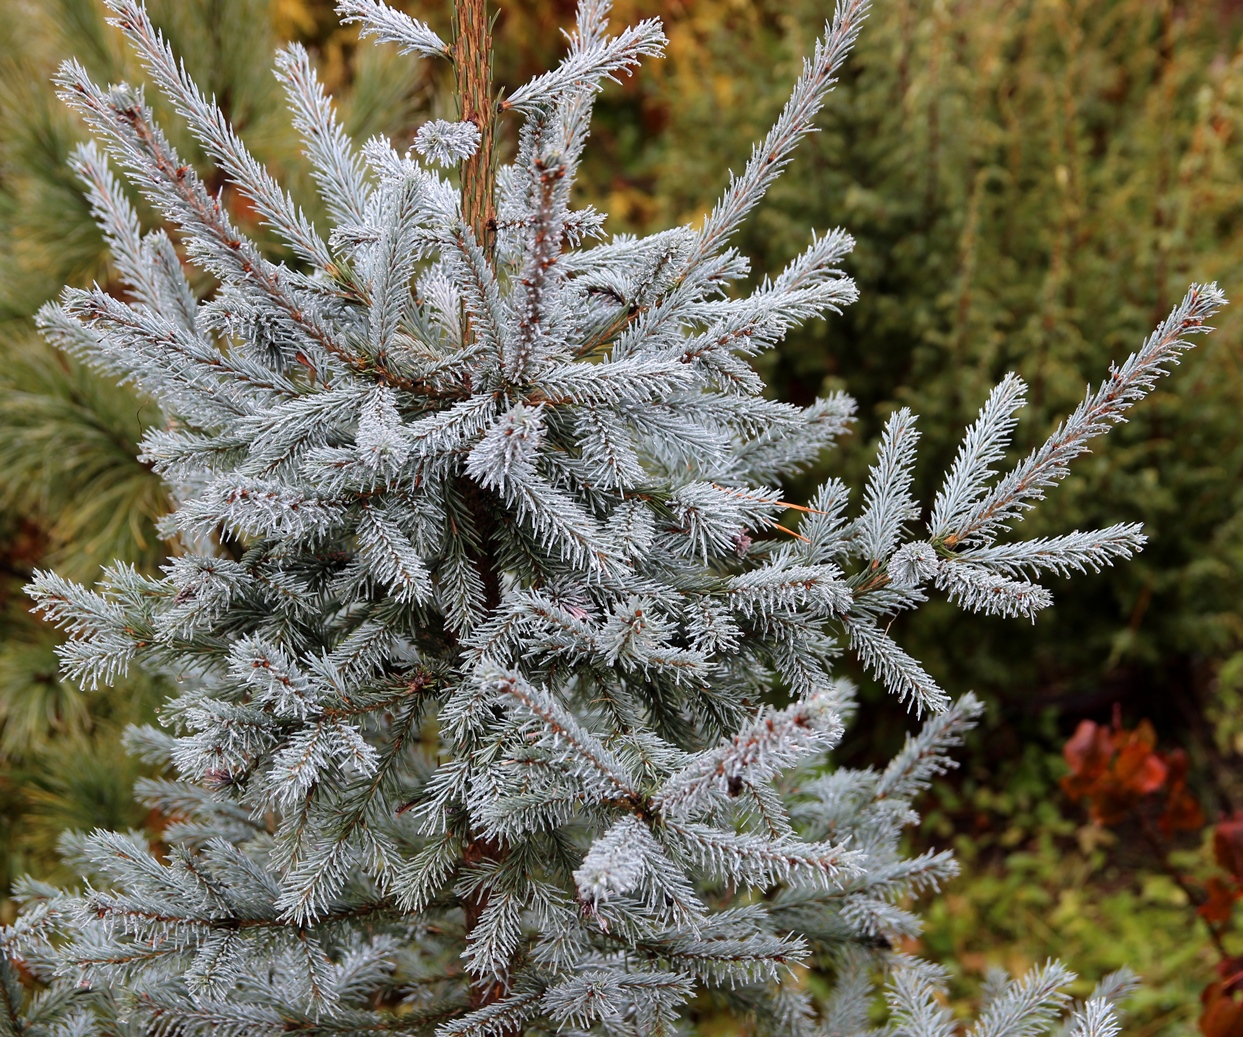 Picea obovata 'Саянская Голубая' с Западного Саяна от Ю.А.Череповского. Согласитесь, хороша. Цвет насыщенный, притом, что фотография сделана в середине октября, когда хвоя у ели обычно уже тускнеет на зиму.